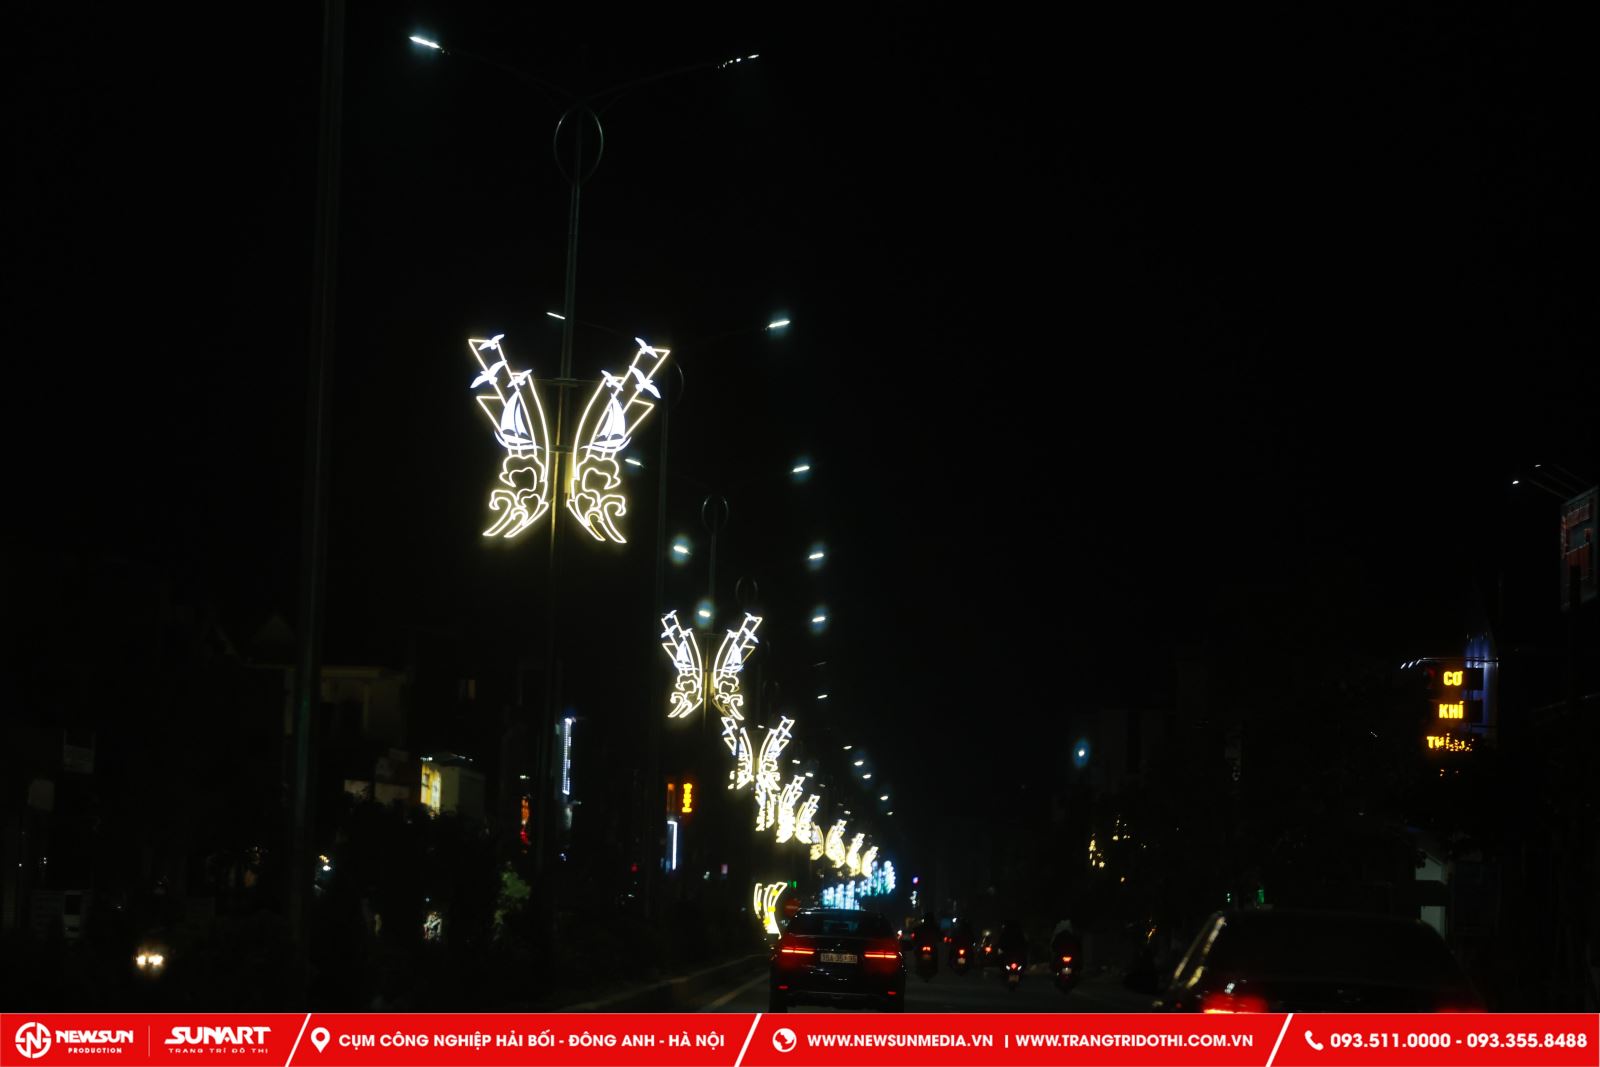 Nghệ thuật trang trí đèn LED đường phố đòi hỏi sự sáng tạo, khéo léo và kỹ năng